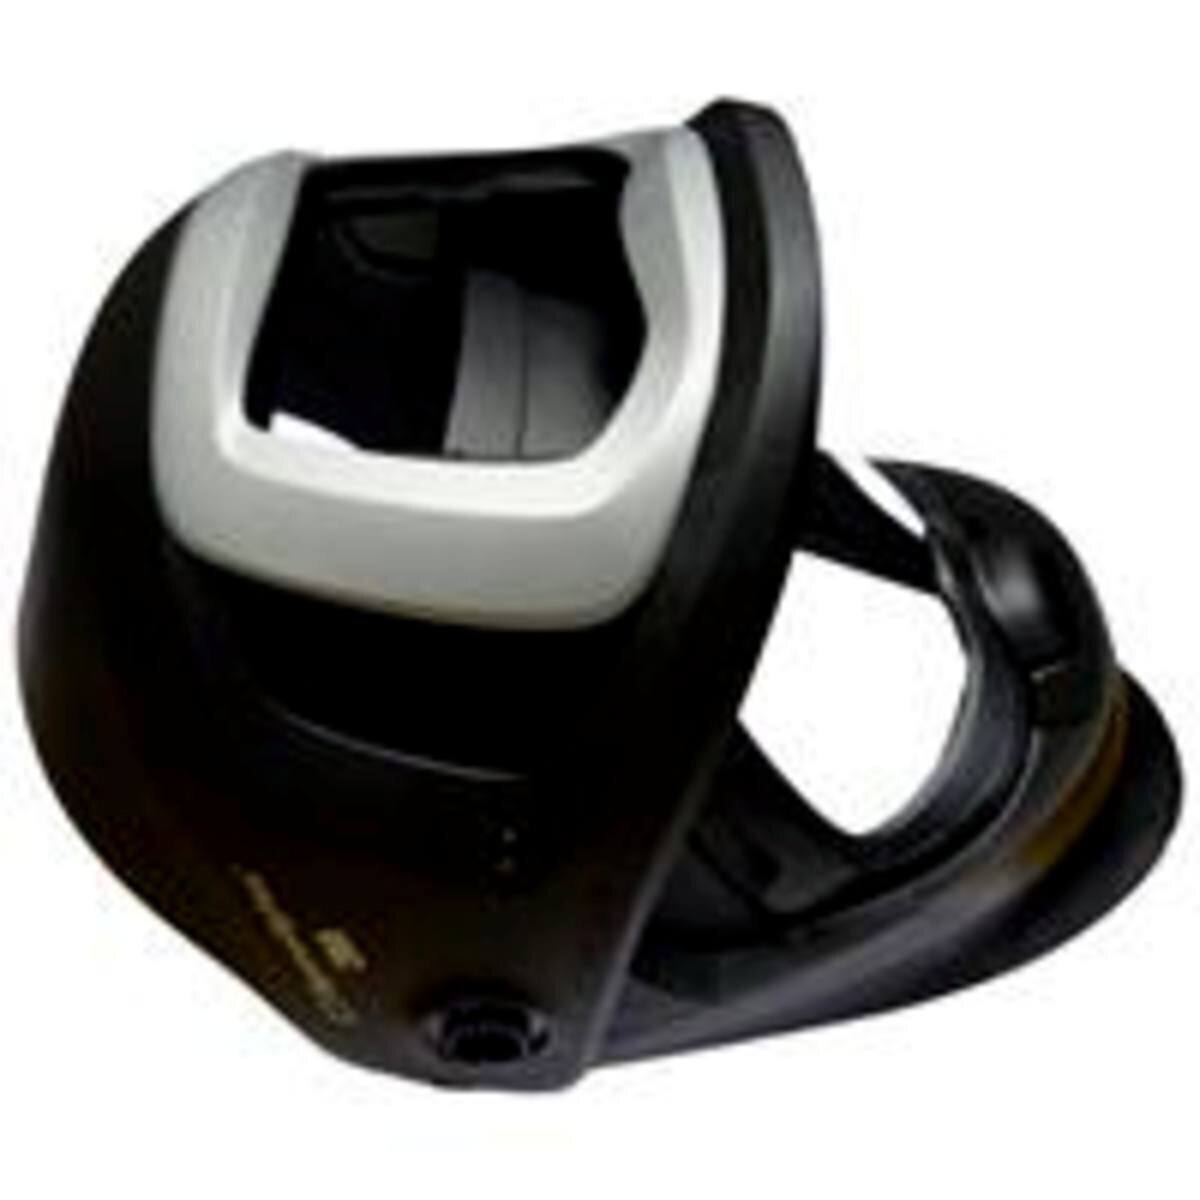 3M Speedglas 9100 FX Air lasmasker zonder ADF automatisch lasfilter, met zijruit, zonder hoofdband #541890